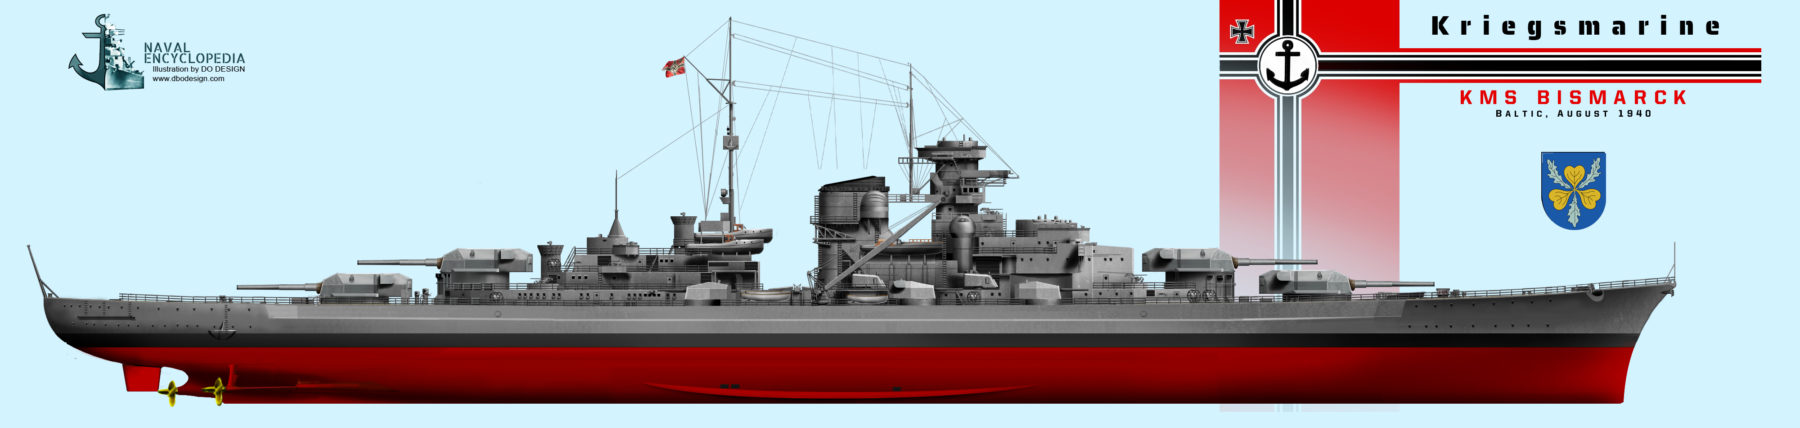 KMS Bismarck in August 1940